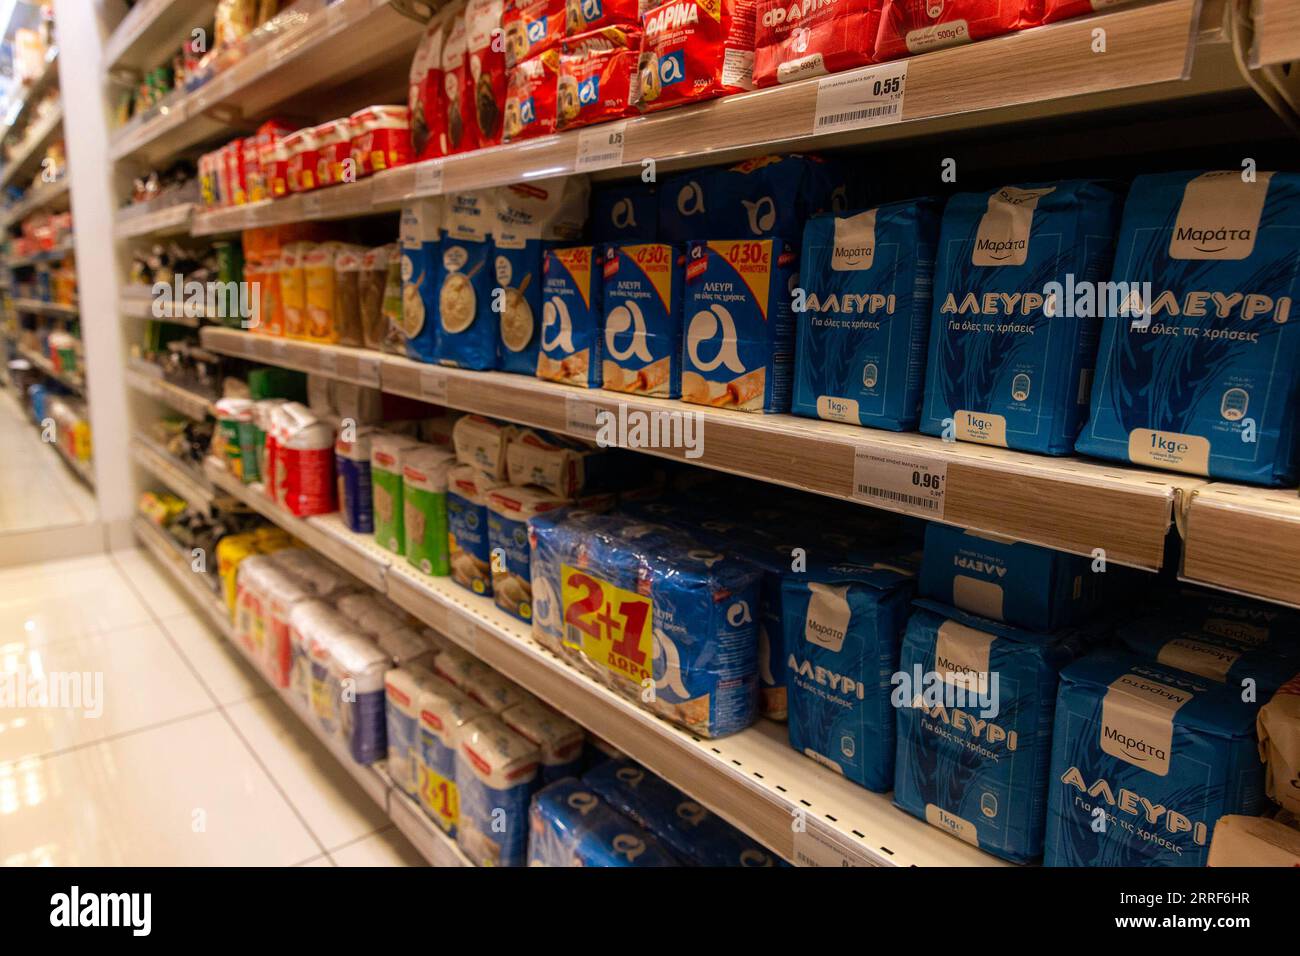 220401 -- ATHEN, 1. April 2022 -- Foto aufgenommen am 1. April 2022 zeigt ein Regal mit Mehlprodukten in einem Supermarkt in Athen, Griechenland. Jüngste Zahlen der Hellenischen Statistischen Behörde ELSTAT zeigten, dass die jährliche Inflationsrate Griechenlands im Februar auf 7,2 Prozent gestiegen ist und damit einen Höchststand von 26 Jahren erreicht hat. Der griechische Verband der Fachkräfte, Handwerker und Händler GSEVEE fordert eine baldige Senkung der Steuern auf Brennstoffe und eine Obergrenze für Strom- und Erdgaspreise sowie eine genaue Überwachung der Nahrungsmittelvorräte des Landes wie Sonnenblumenöl und Mehl, um dies zu verhindern Stockfoto